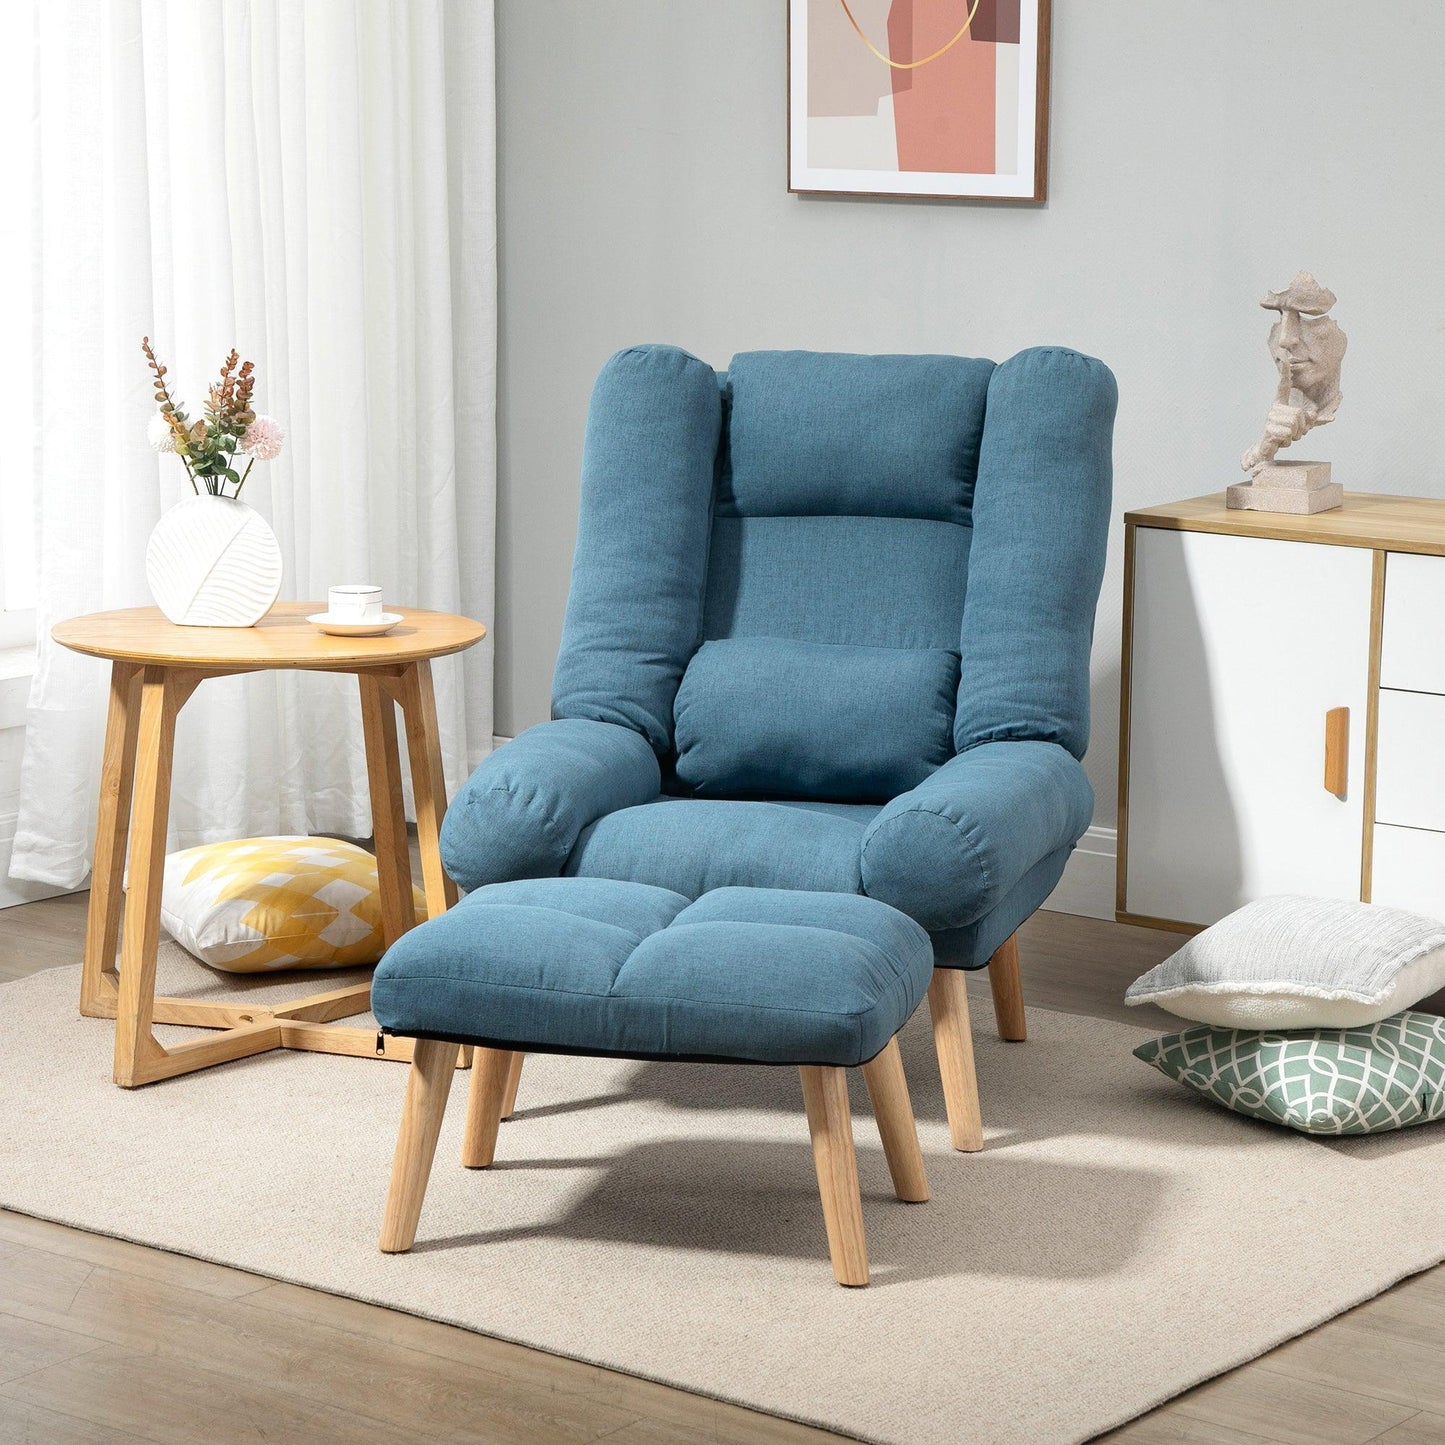 HOMCOM Blue Recliner Chair with Ottoman, 3-Position, Linen Fabric - ALL4U RETAILER LTD